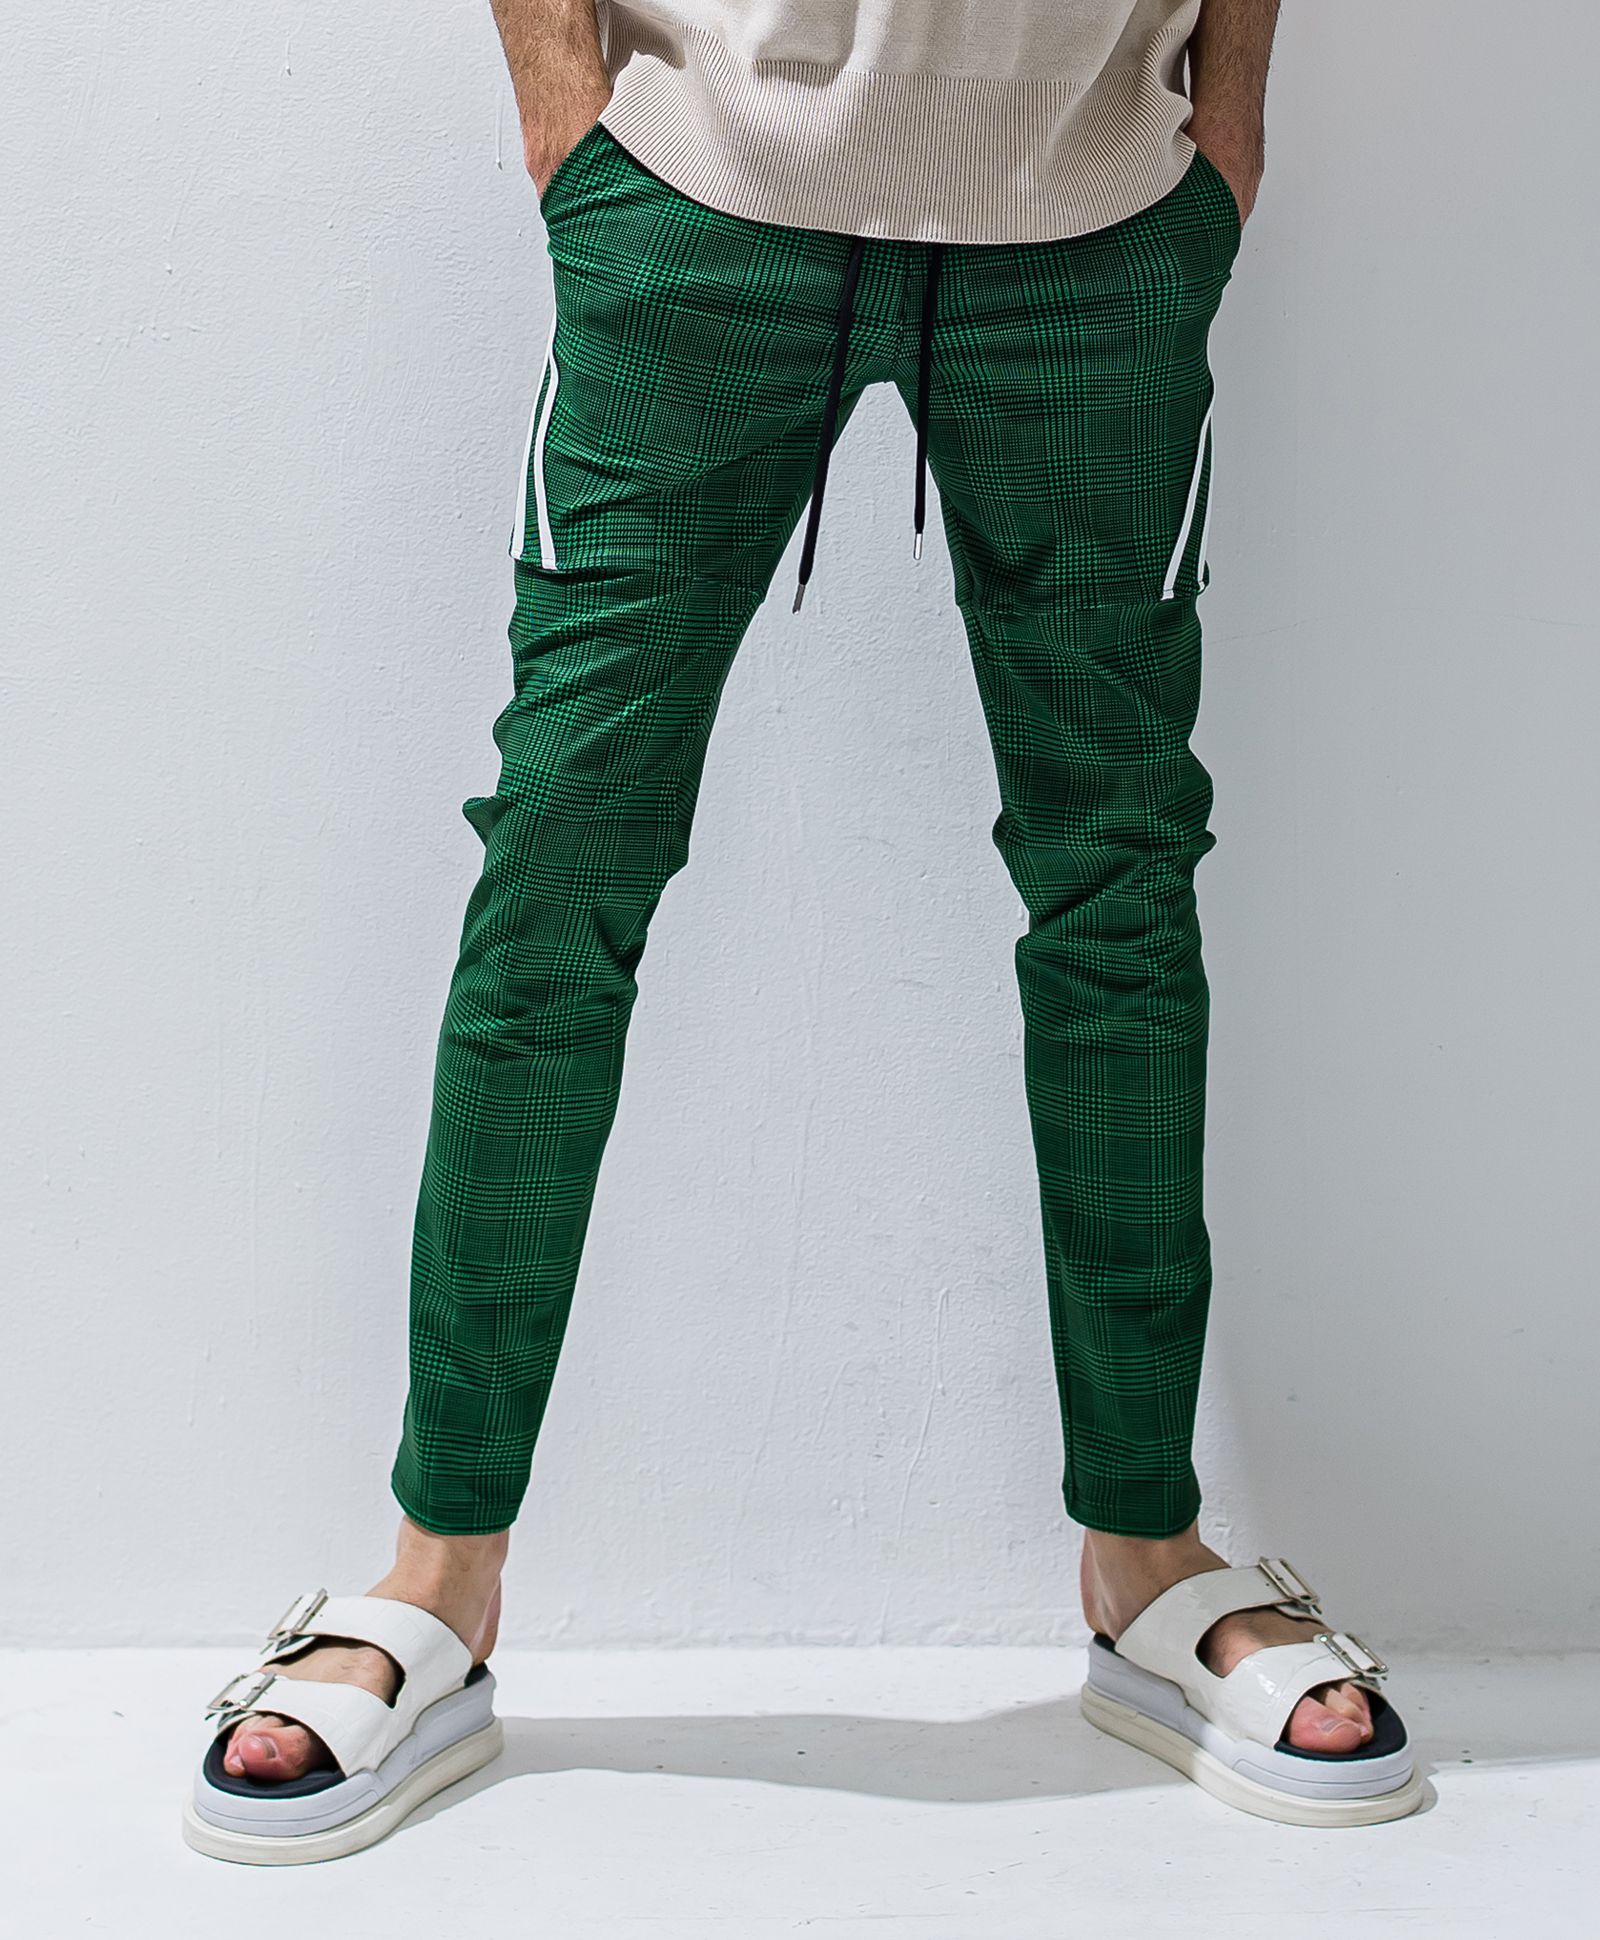 RESOUND CLOTHING - TYLER LINE PANTS / イージーラインパンツ